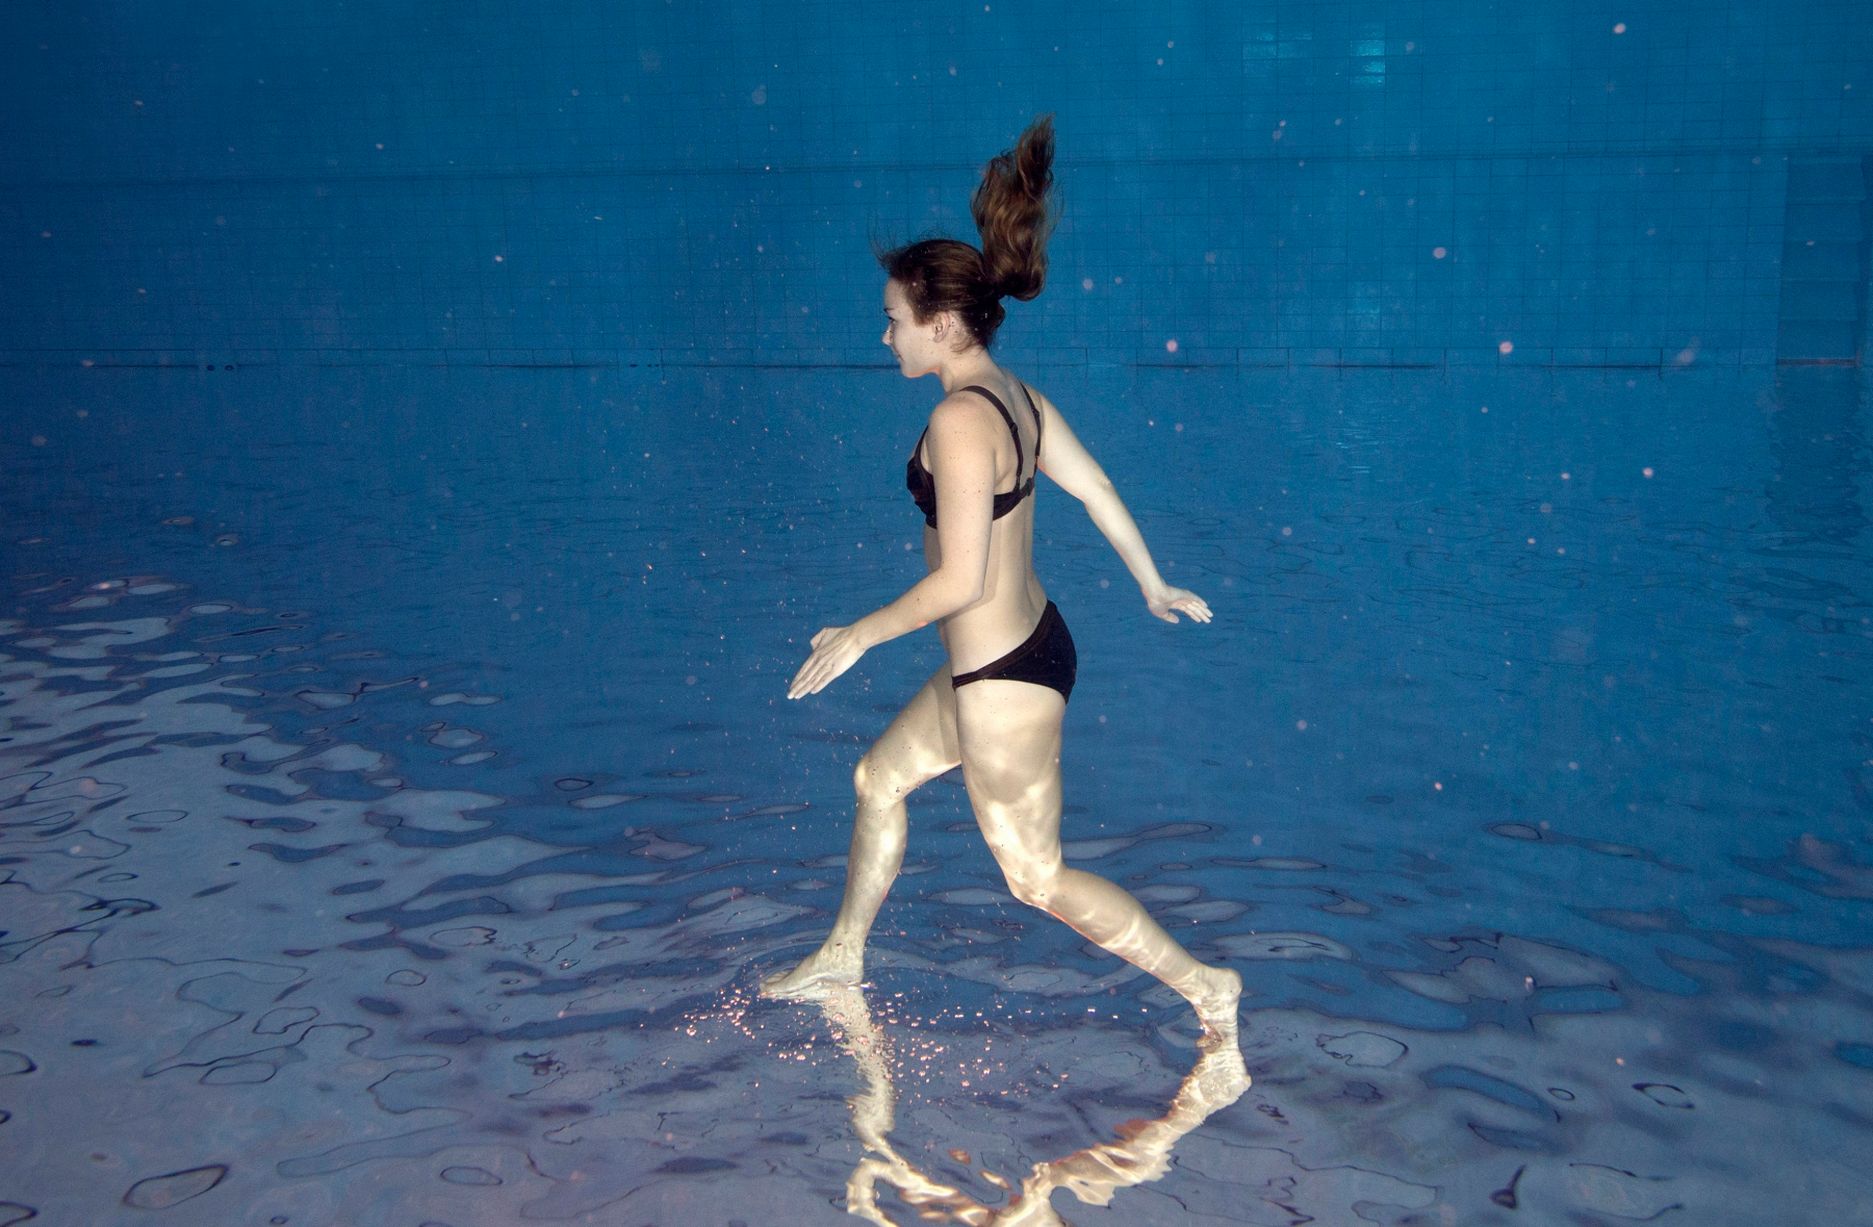 Ez a lány tényleg a vízen jár?! – fotók